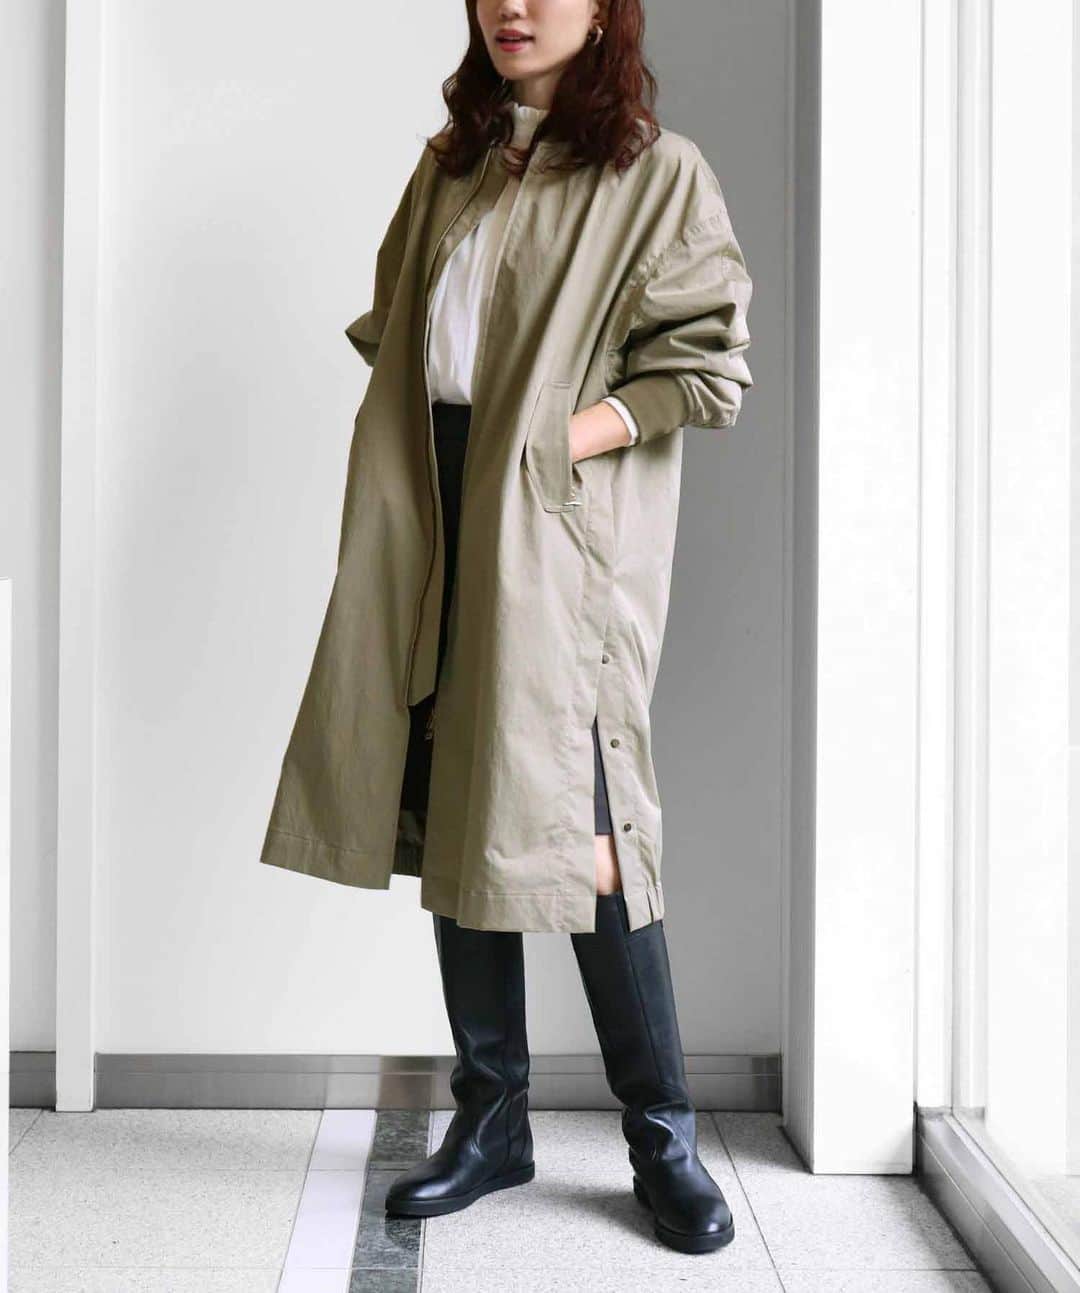 ジネスのインスタグラム：「Jines Outer Collection  10月も終わりに近づき、冬ももう近くまで。  まだ寒くなりきらない気温におすすめのJinesこだわりのロング丈のコートやジレを厳選してご紹介。 大人女性のための上質素材やこだわりデザインをぜひご堪能ください。  ￣￣￣￣￣￣ ■アレルビート加工 MA-1ライクロングブルゾン No. 81330601 ¥29,480(in tax)  ■デタッチスリーブキルトフードコート No. 80325607¥39,600(in tax)  ■ラメファンシーツイードジレ【WEB限定】 No. 80301216 ¥19,580(in tax)  ■リバーシブル シープライクファーロングベスト No. 80308205 ¥24,970(in tax)  ■カルゼダンボール バックフリルジャケット No. 80301239 ¥18,480(in tax)  ￣￣￣￣￣￣￣ 他のアイテムも @jines_official 公式オンラインストアにてご覧頂けます✨  ￣￣￣￣￣￣￣ #jines #ジネス #大人カジュアルきれいめコーデ #きれいめコーディネート #オフィススタイル #大人カジュアルファッション #大人可愛いコーディネート #大人フェミニンコーデ #オトナカジュアルコーデ #スタイルアップコーデ #大人きれいめコーデ #きれいめカジュアルコーデ #春スタイル #大人可愛いファッション #着回しコーディネート #大人カジュアルスタイル #マルチカラーニット #有末麻祐子」